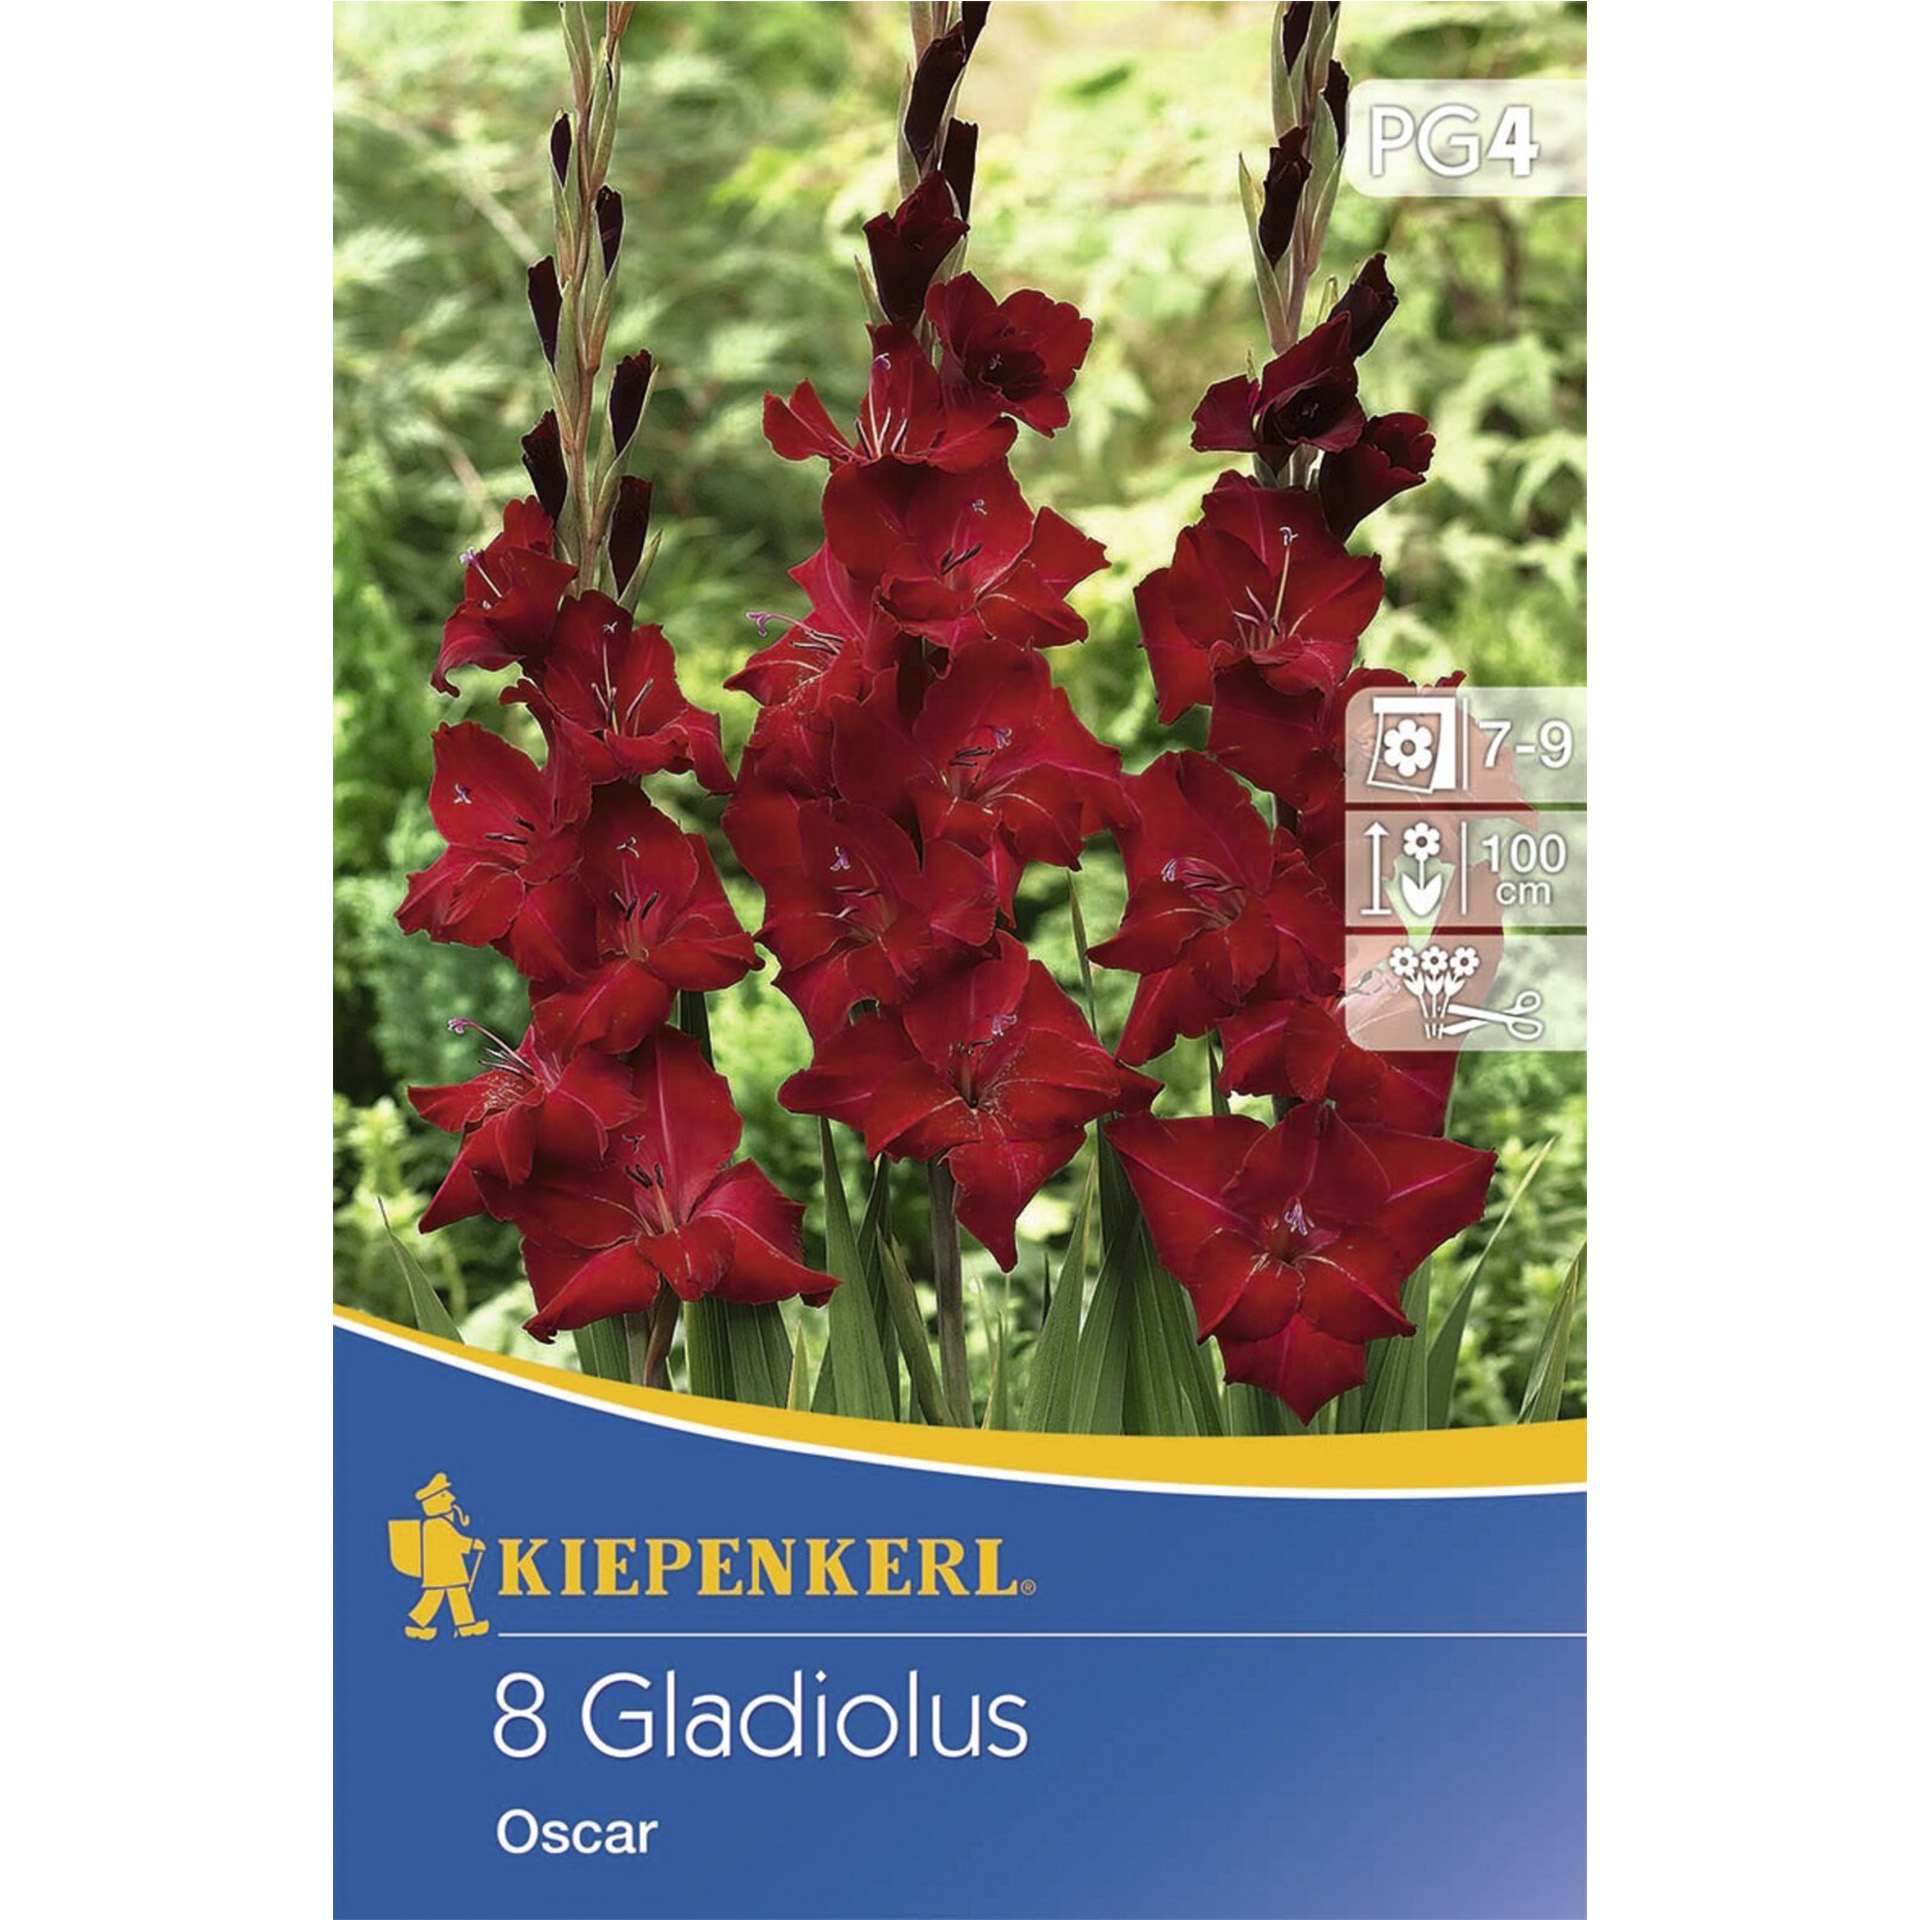 Abbildung von Gladiole Oscar auf Verpackung